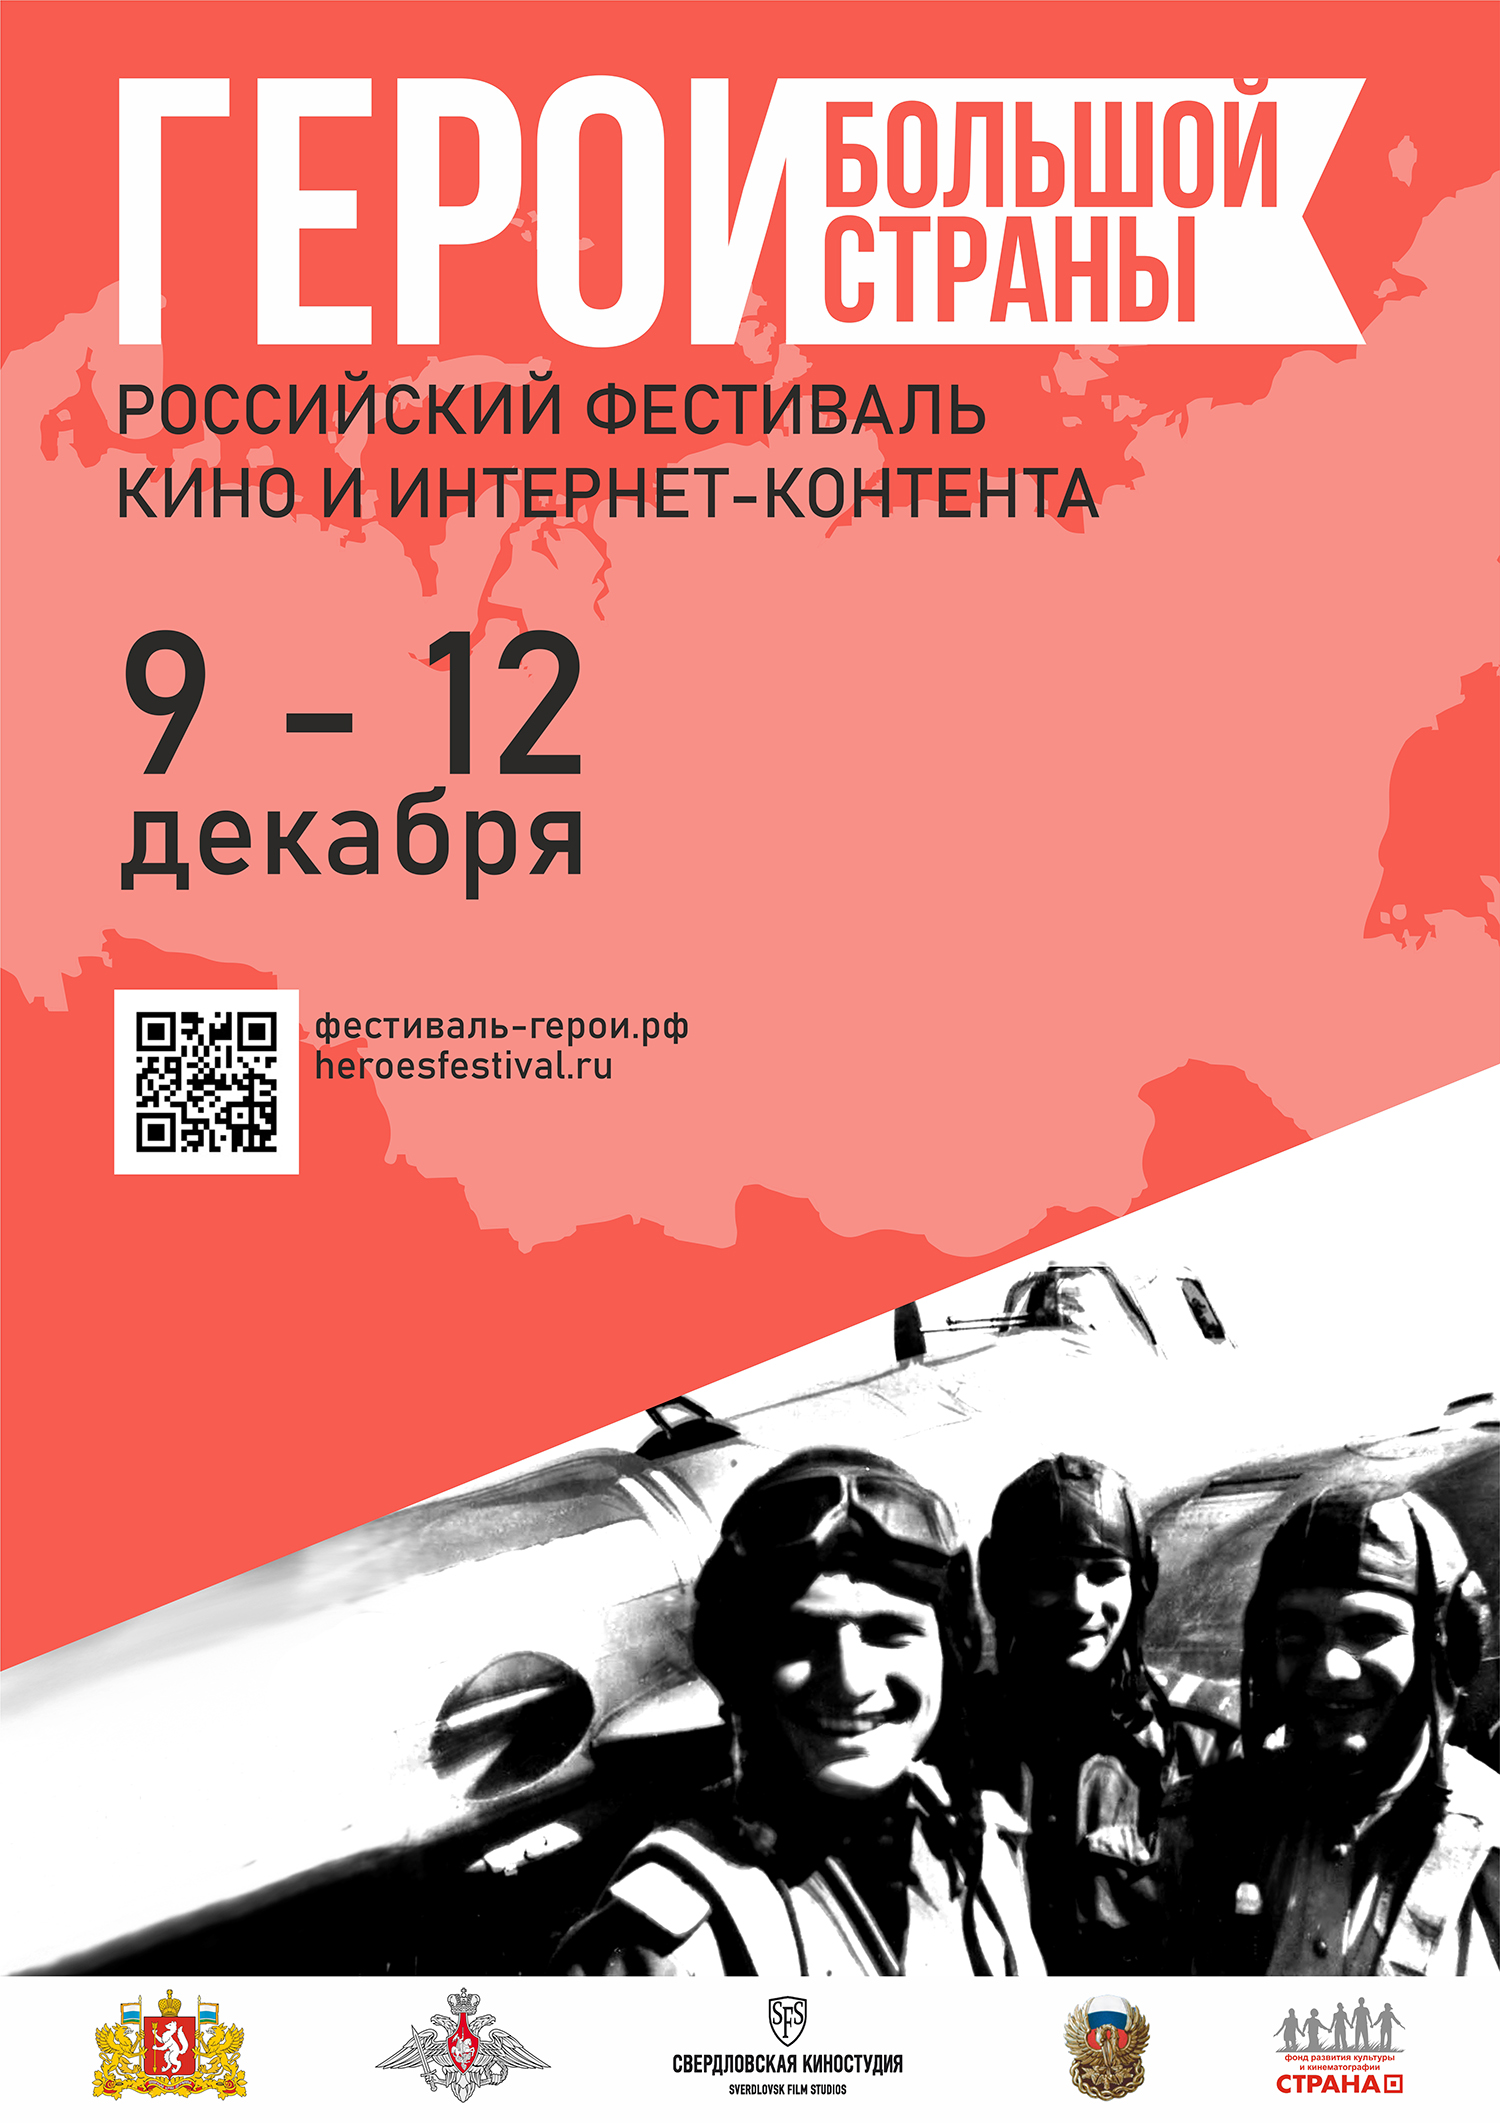 Начался прием заявок на участие в Российском фестивале кино и интернет-контента «Герои большой страны»